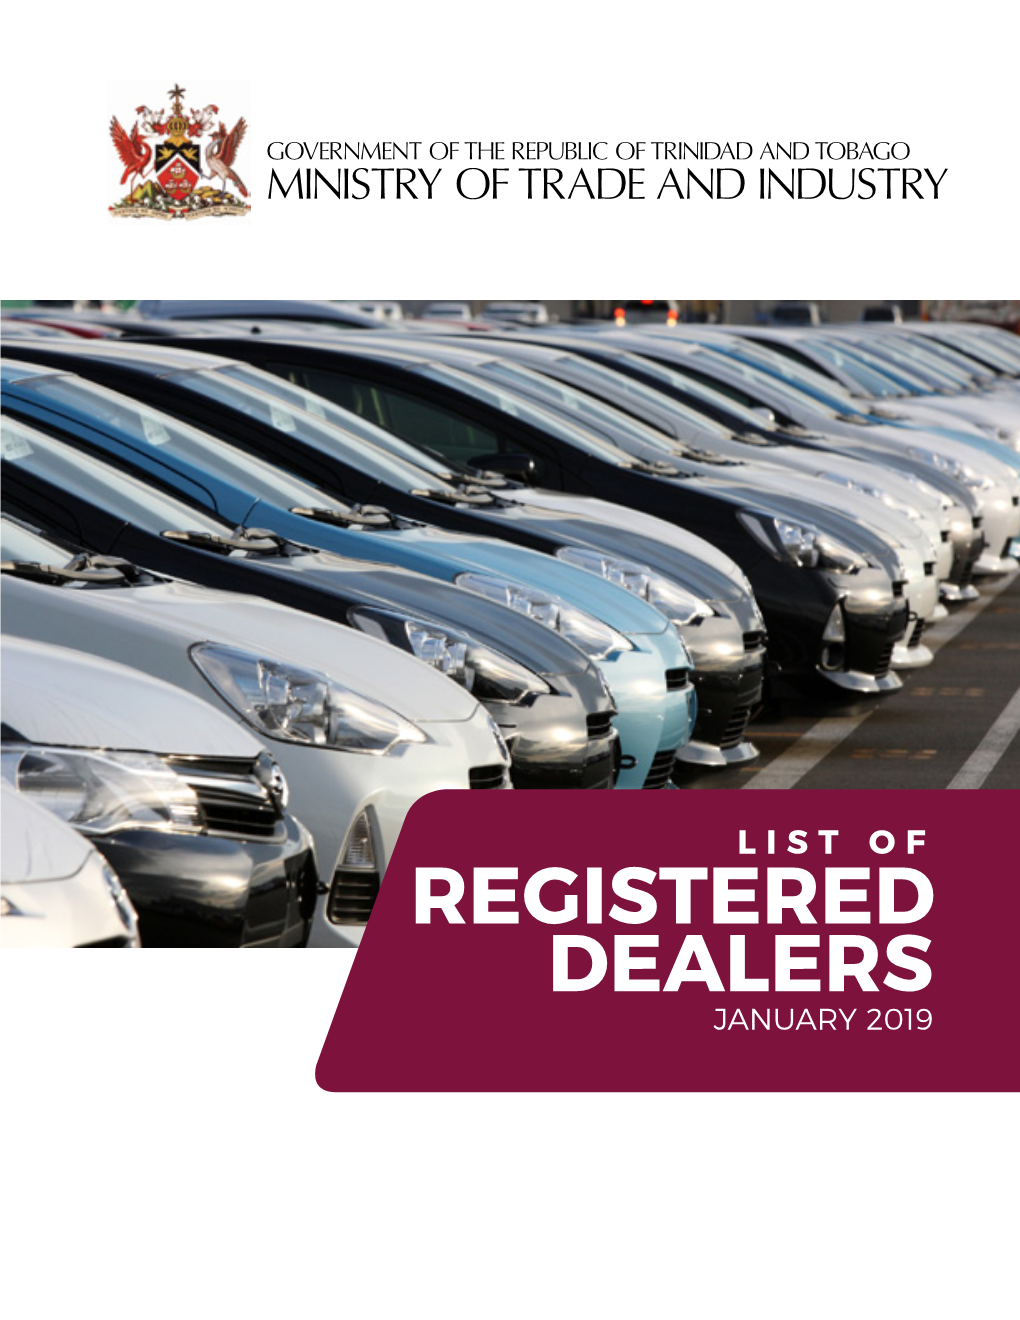 Registered Dealers January 2019 List of Registered Dealers #-A Dealer Company Name Company Address Reg